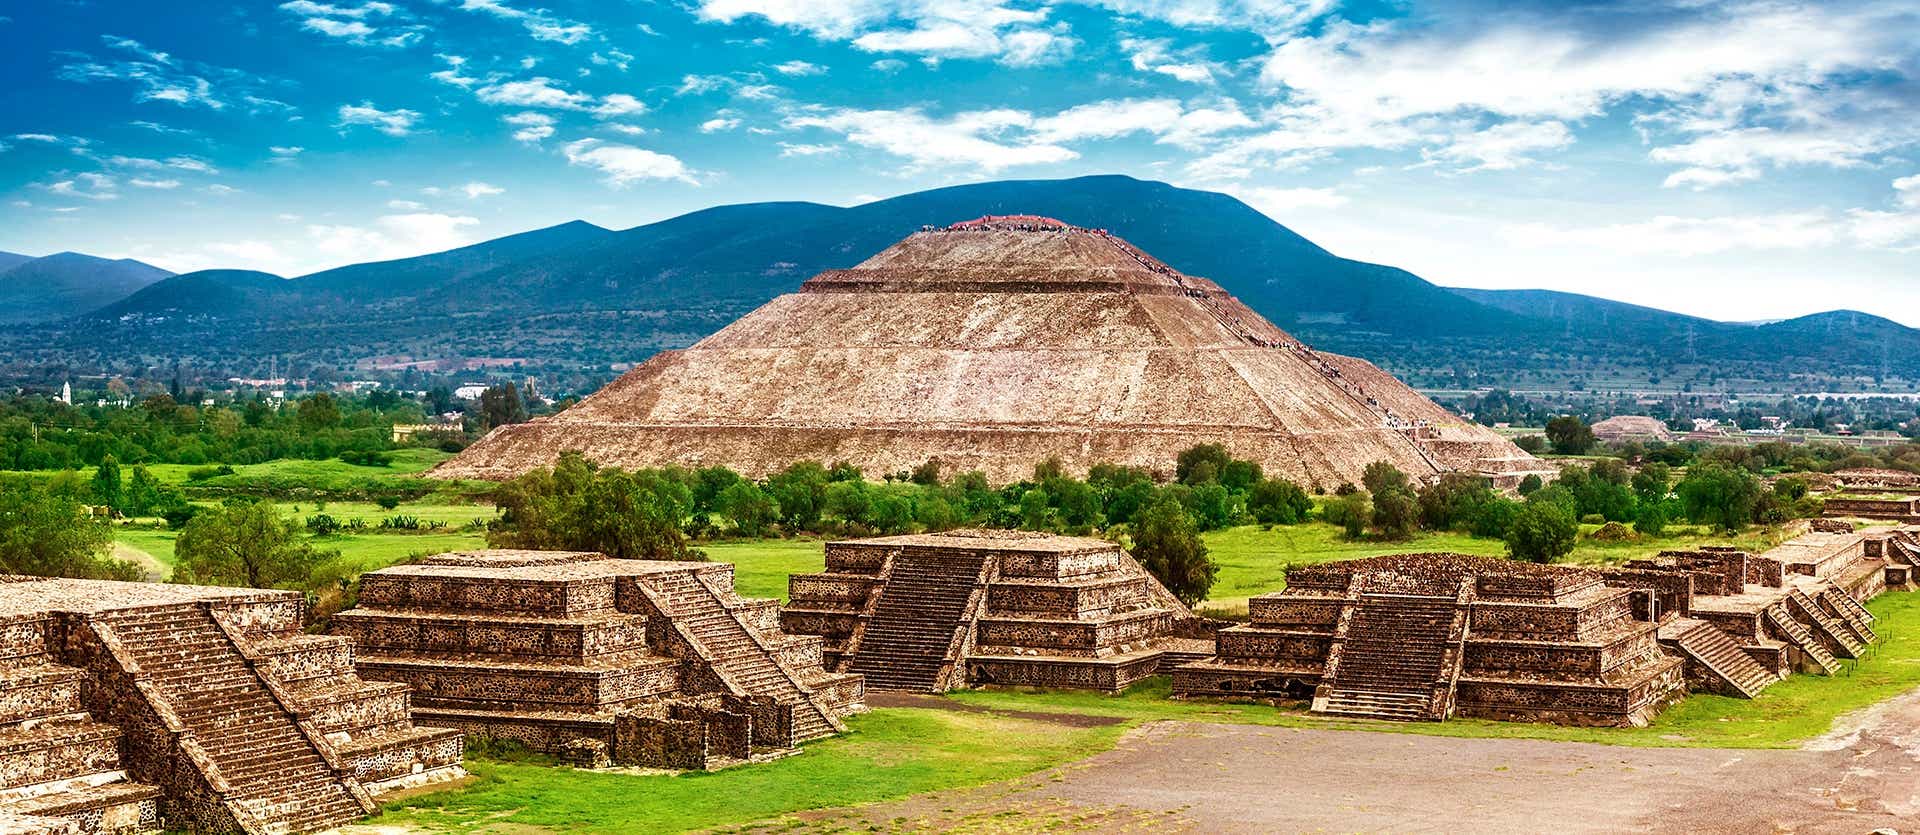 Teotihuacan <span class="iconos separador"></span> Mexico City